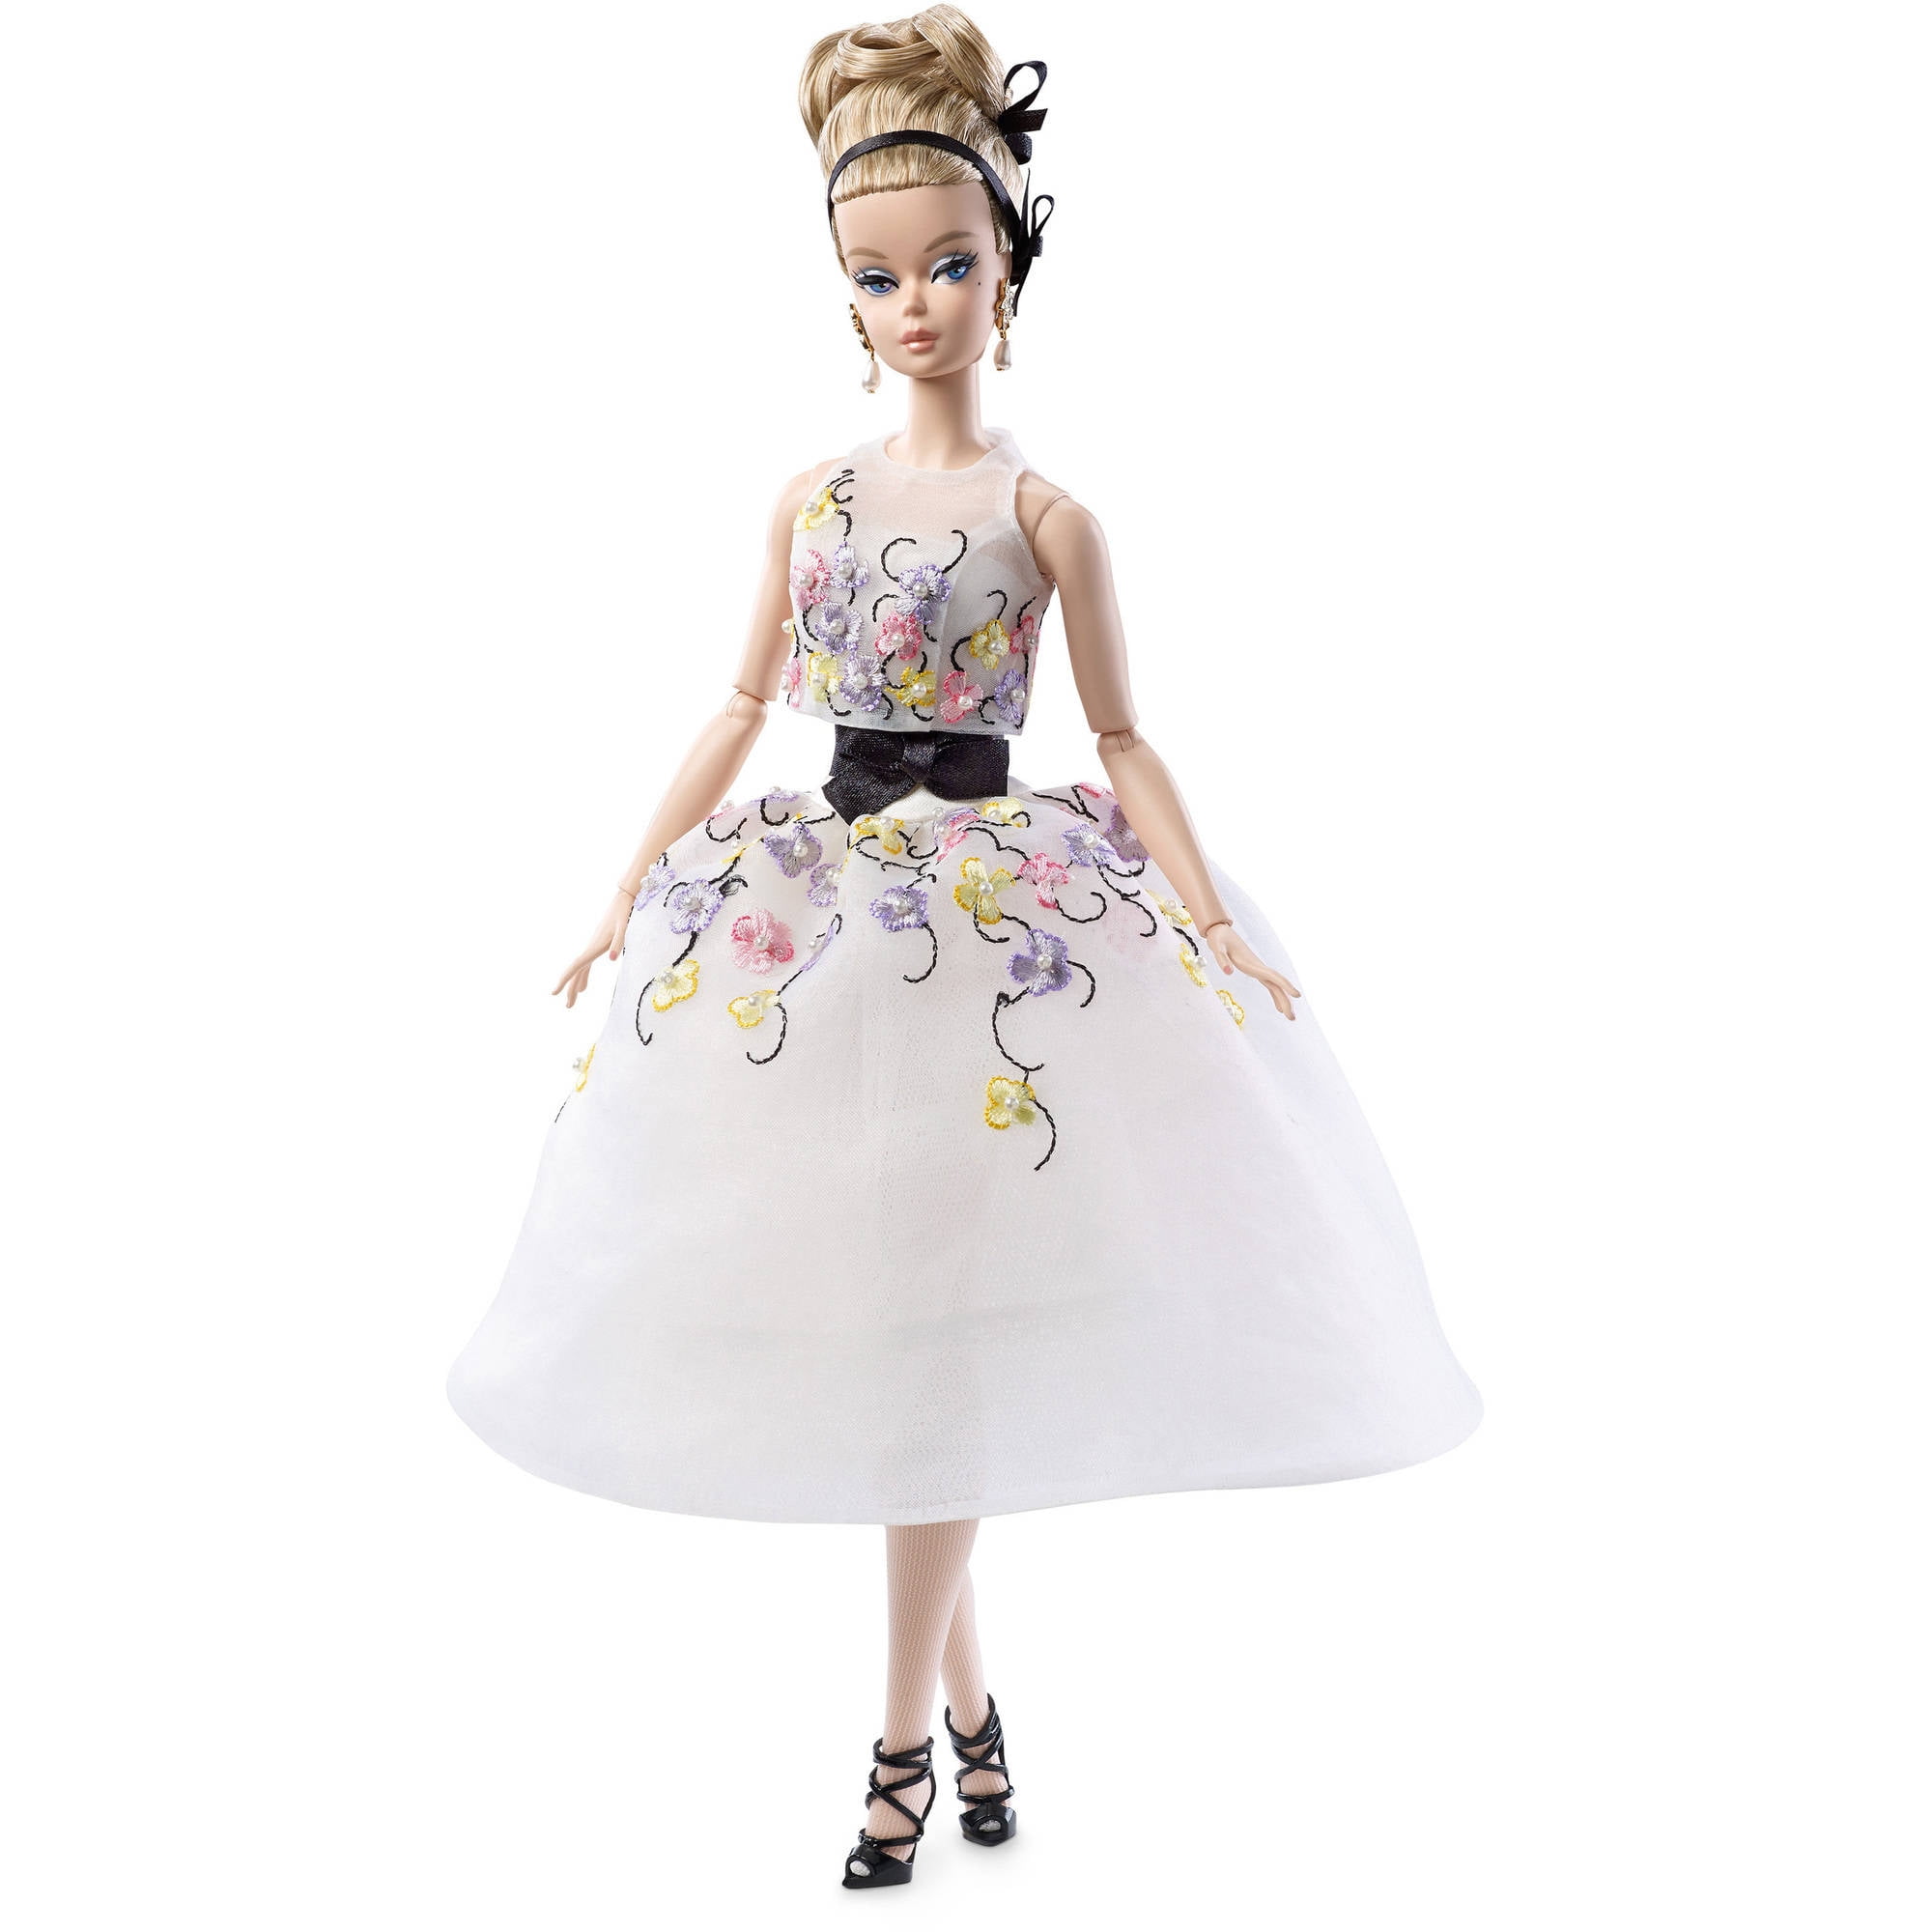 をいただい Barbie Fashion Model Collection Doll， Glam Gown B014v91p4khappy